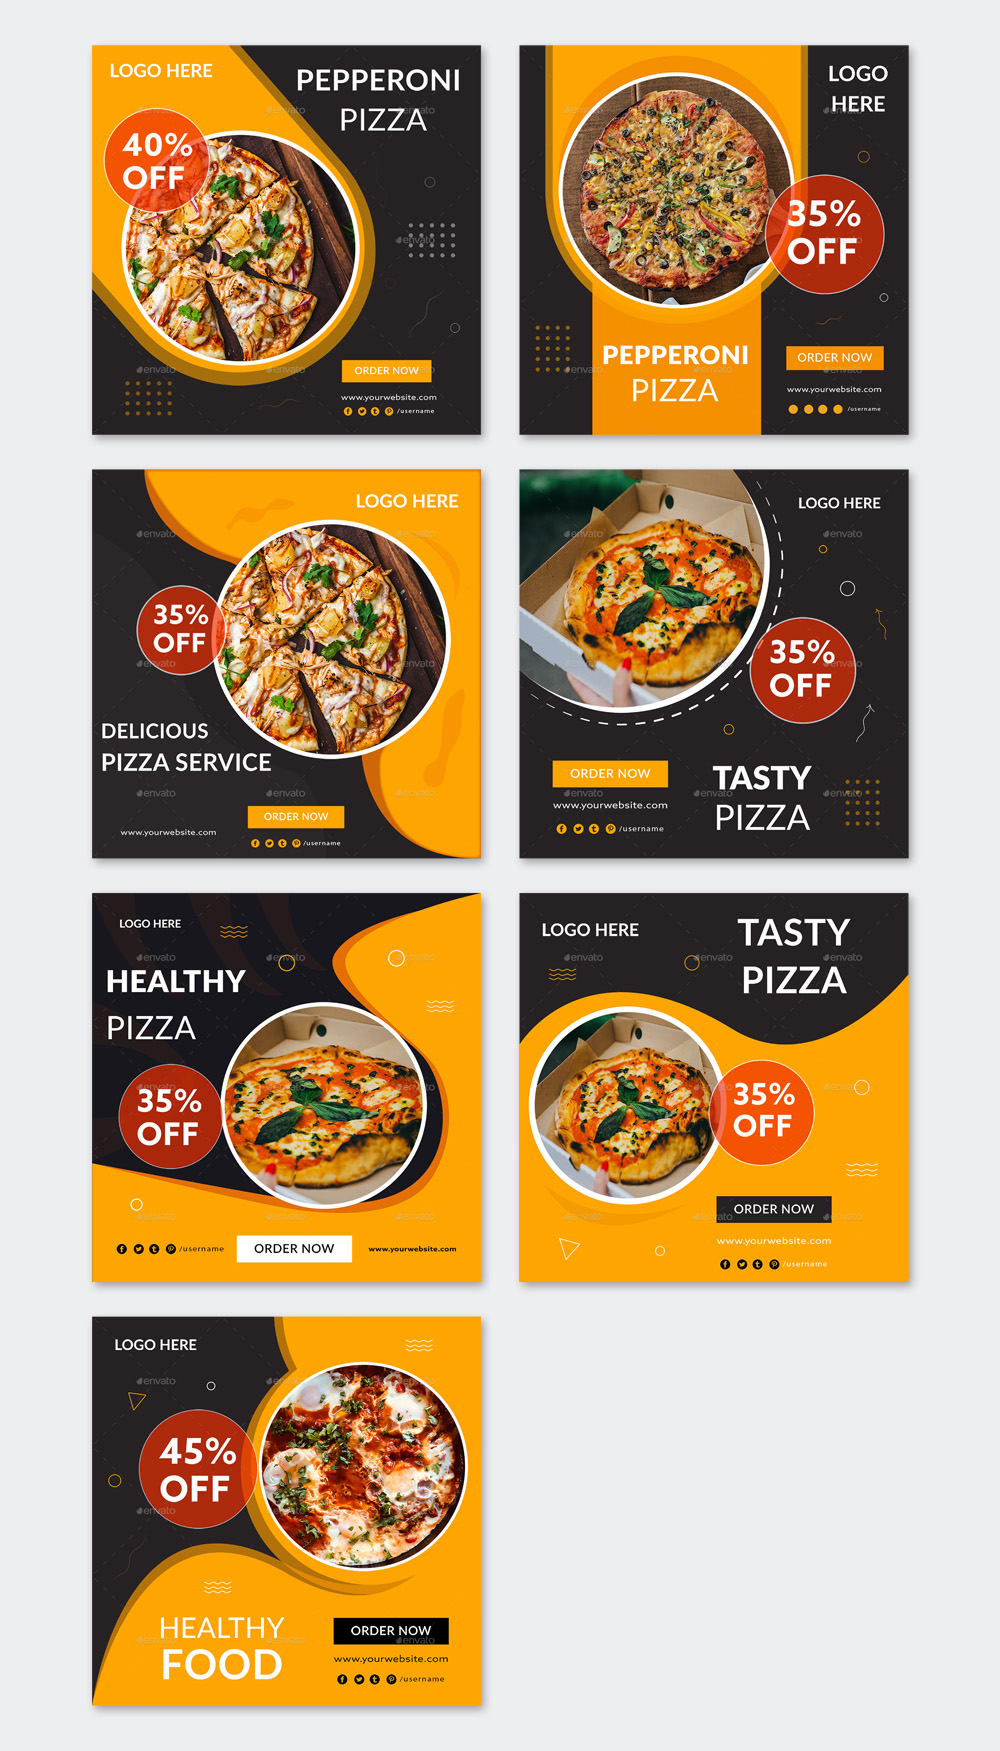 Pizza Food Instagram Posts Design